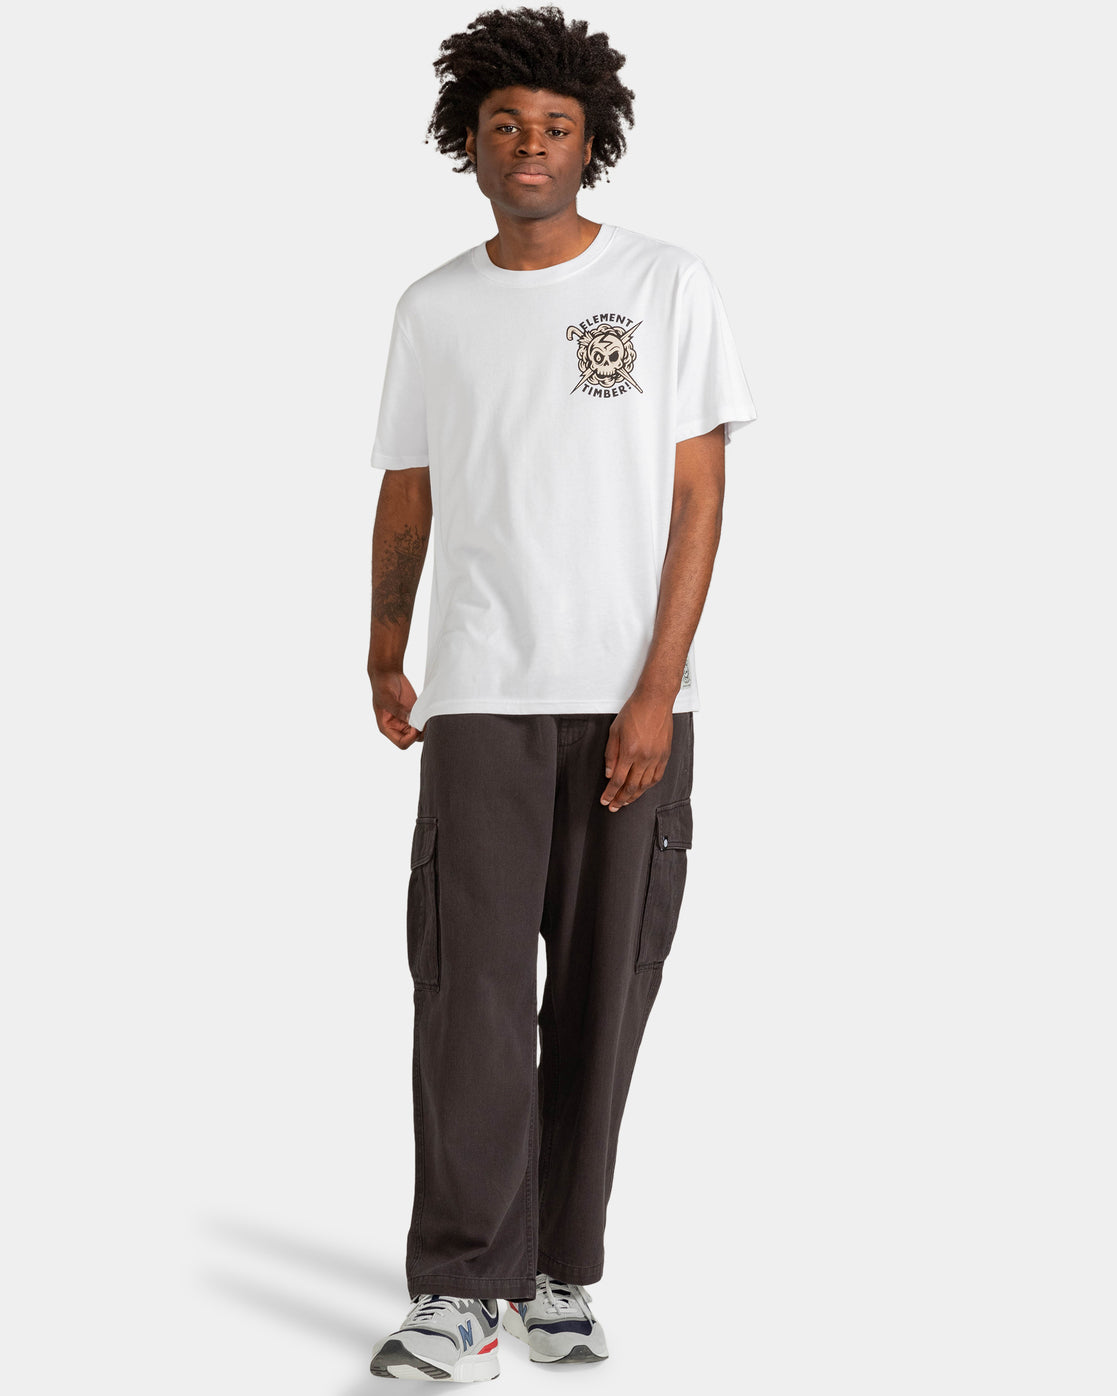 T-shirt Element Skateboards x Timber Summon Optique Blanc | Nouveaux produits | Produits les plus récents | Produits les plus vendus | éléments | surfdevils.com